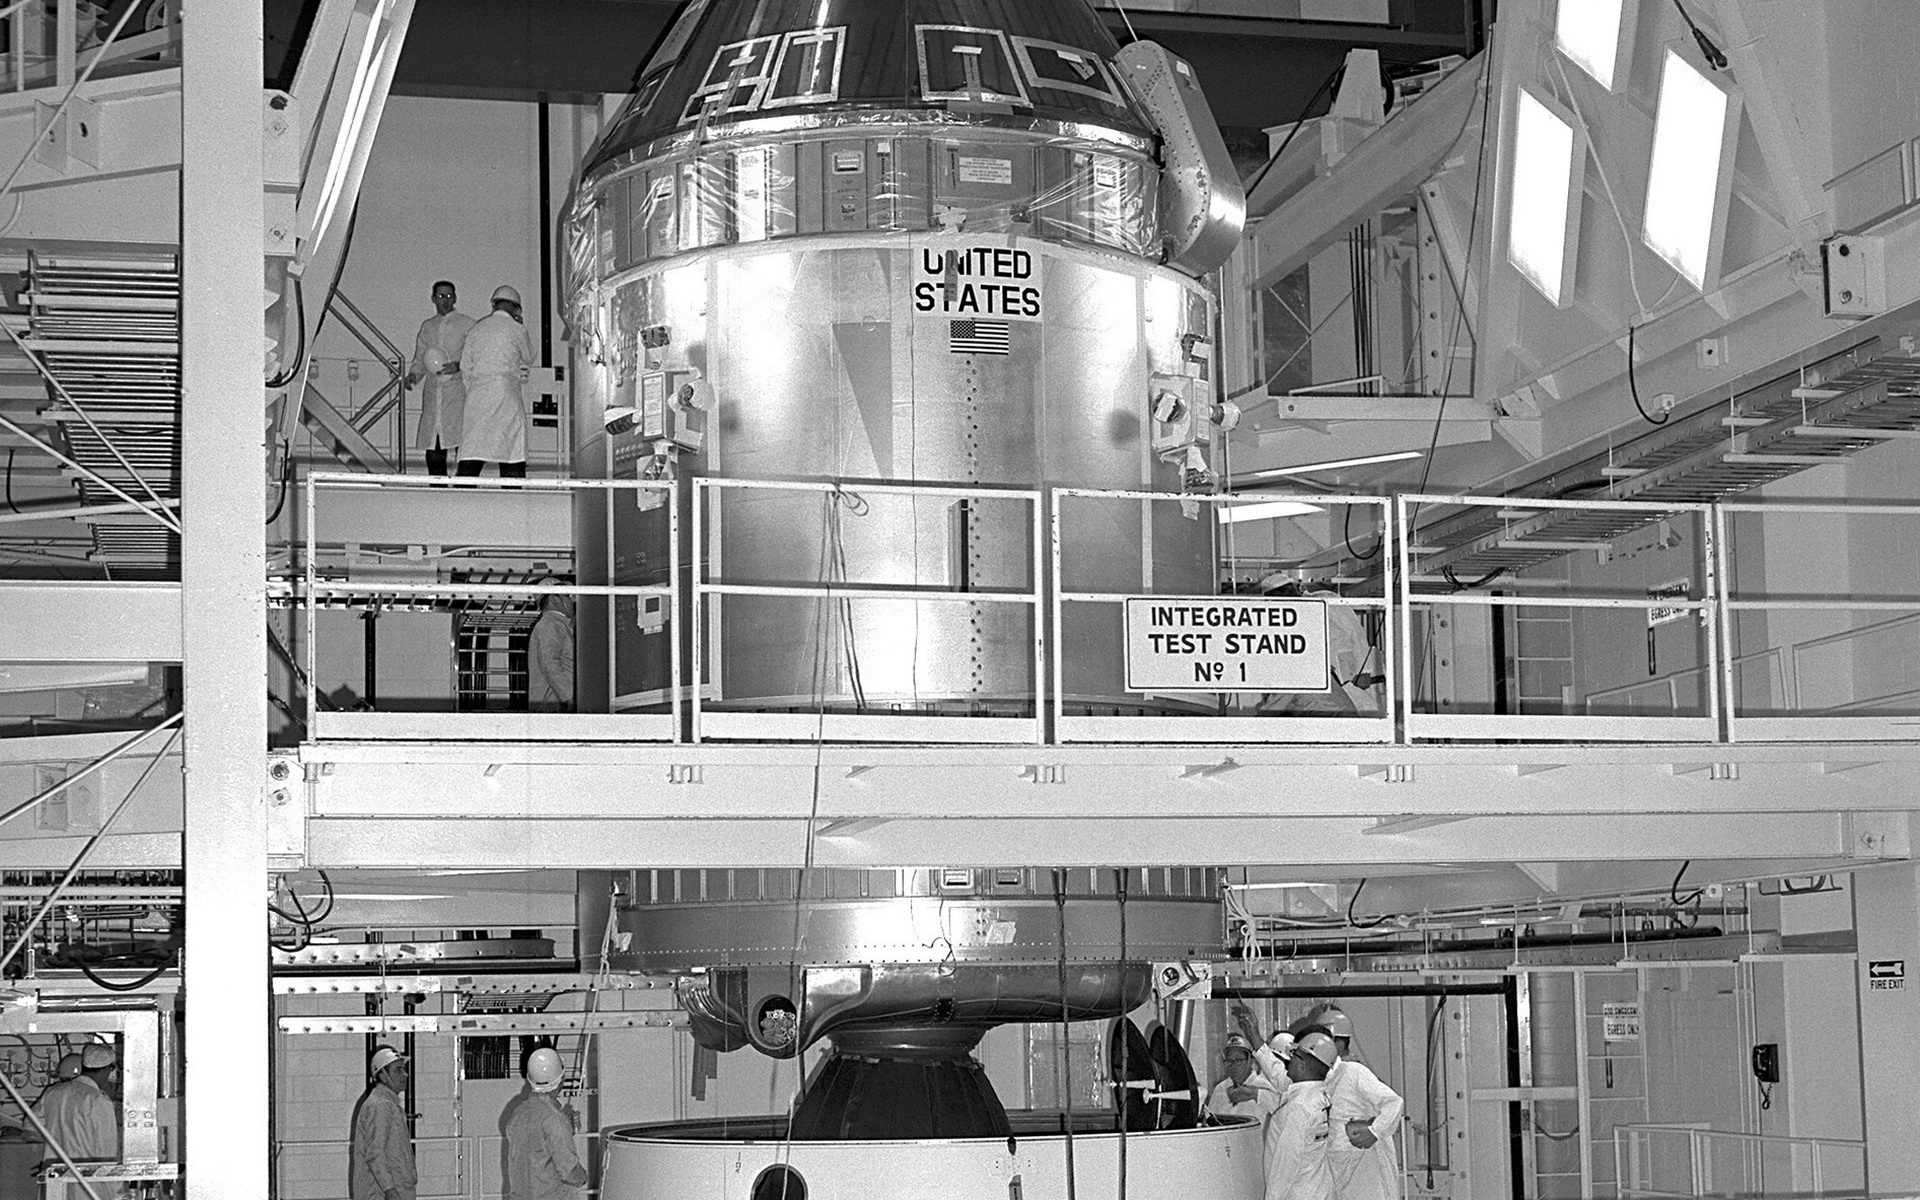 壁纸1920x1200阿波罗11珍贵照片壁纸壁纸 阿波罗11珍贵照片壁纸壁纸 阿波罗11珍贵照片壁纸图片 阿波罗11珍贵照片壁纸素材 其他壁纸 其他图库 其他图片素材桌面壁纸